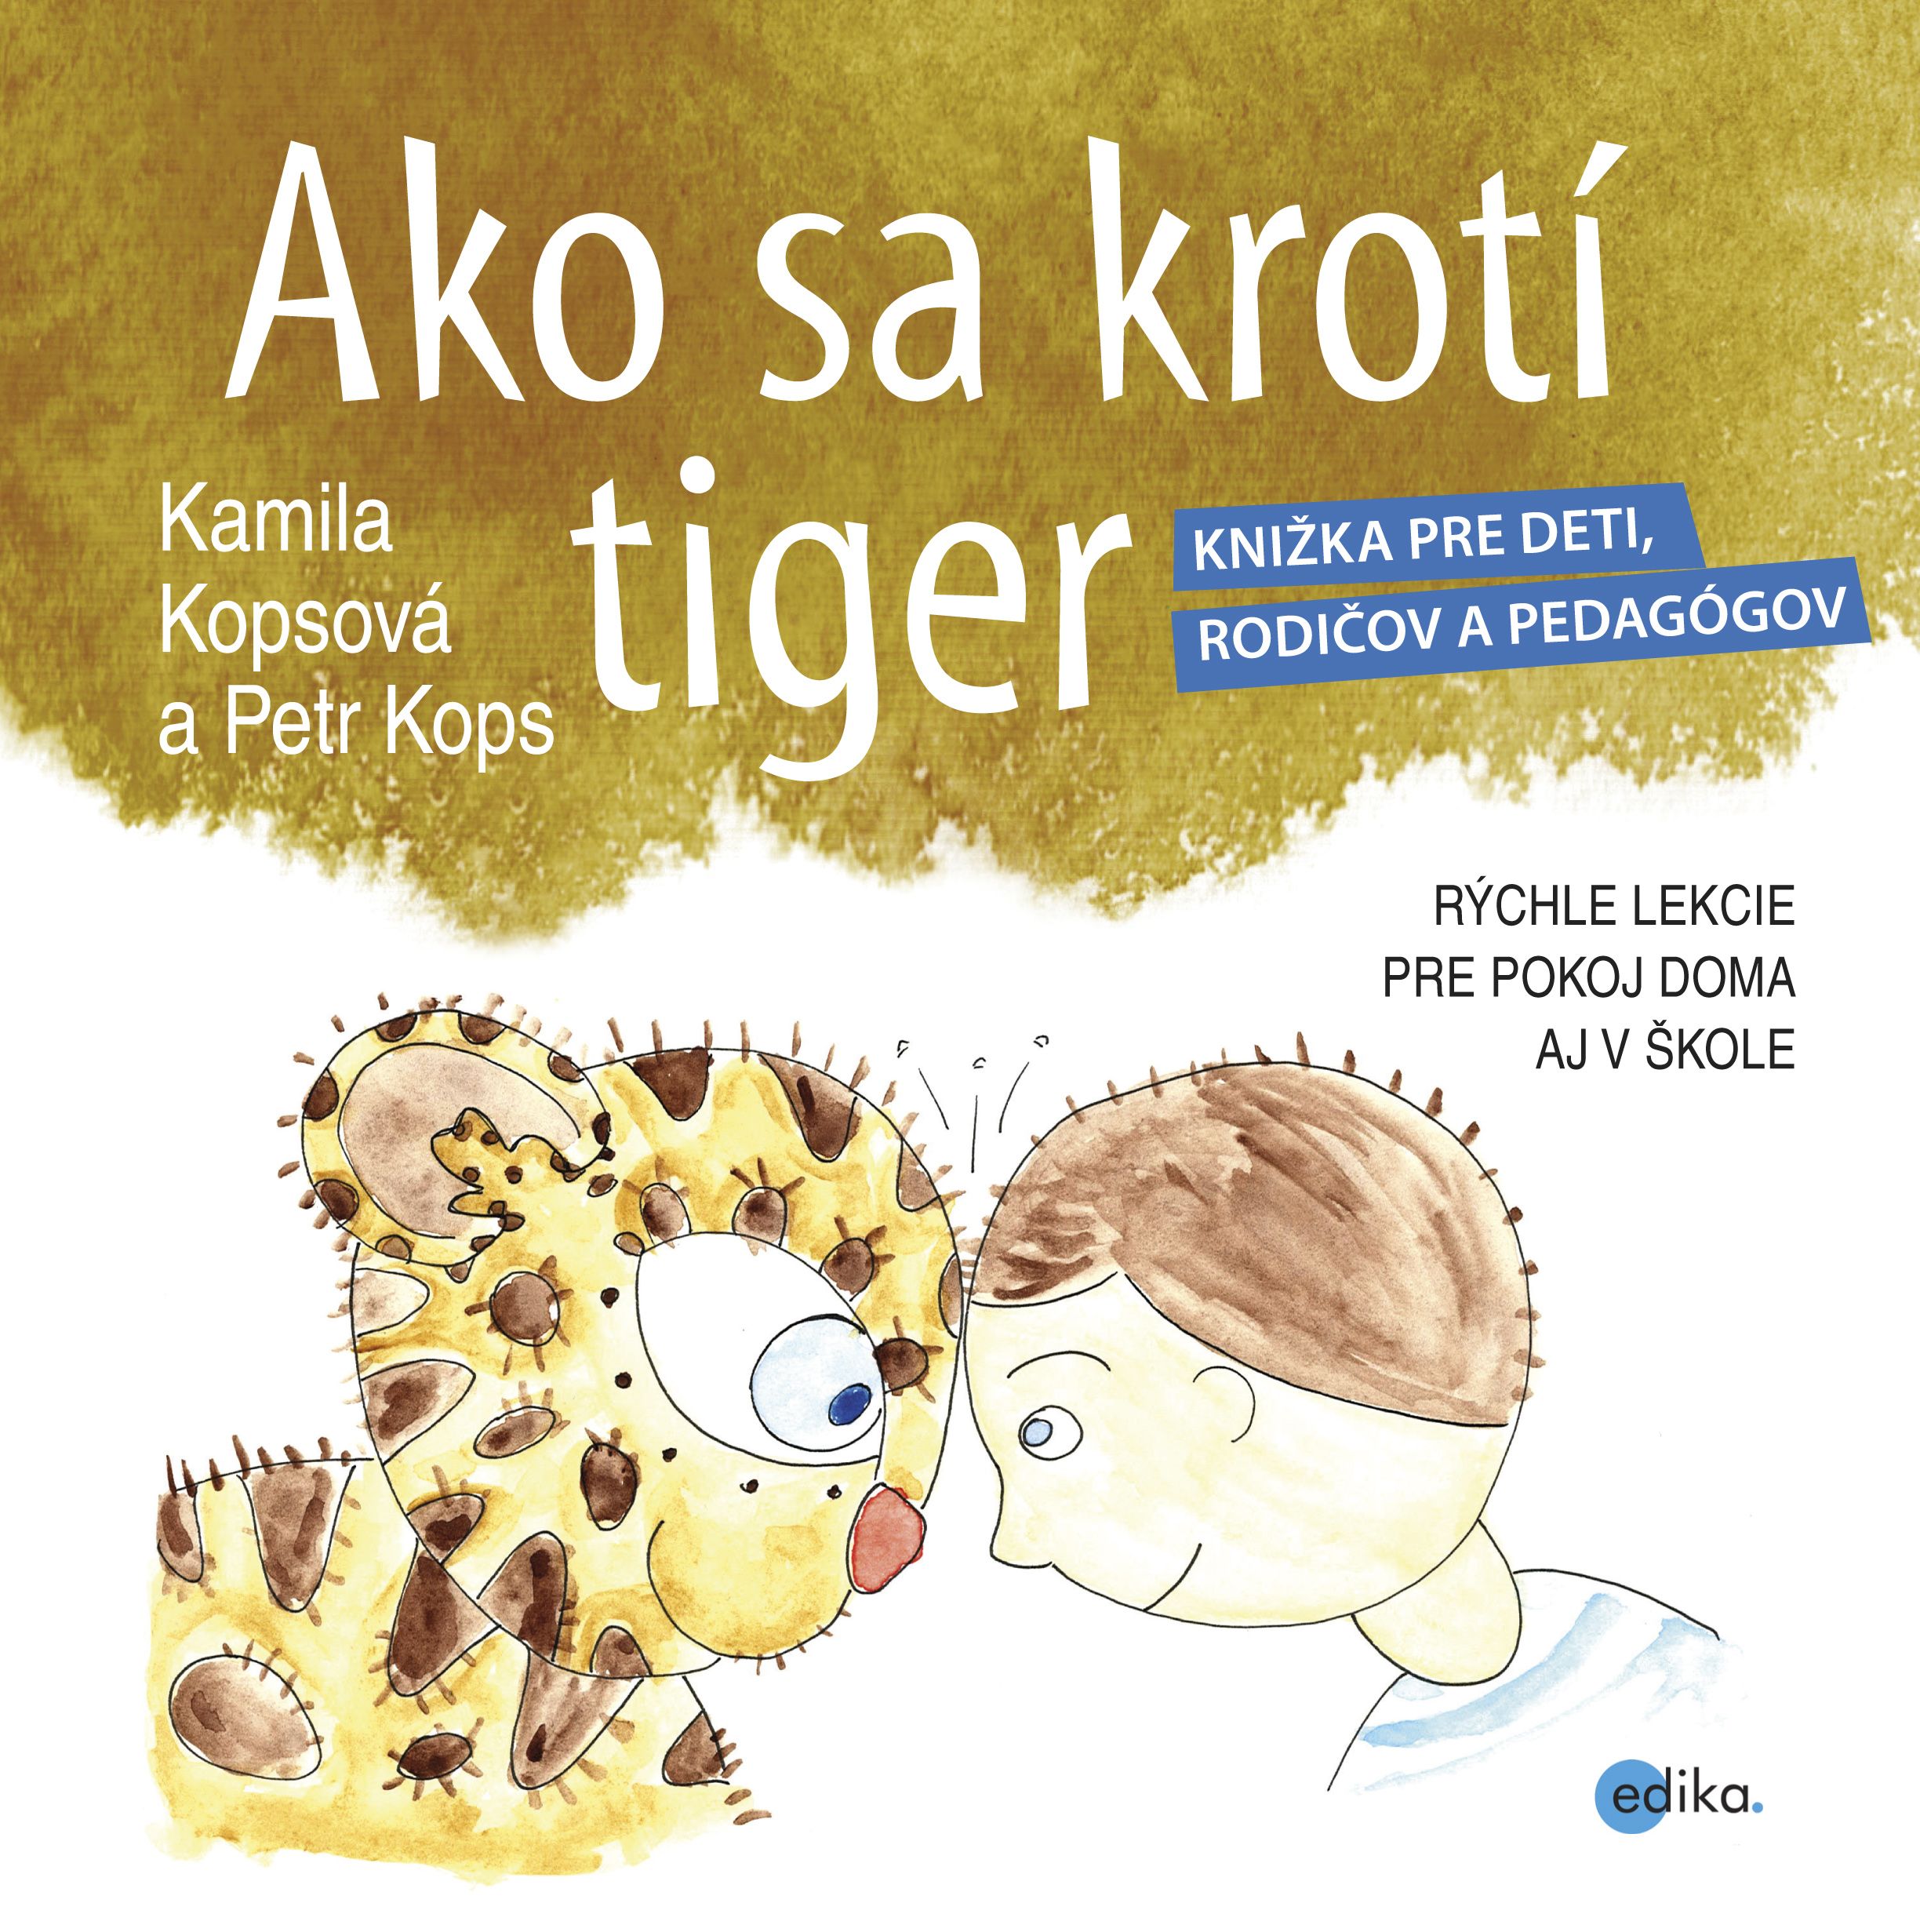 Ako sa krotí tiger - Kamila Kopsová a Petr Kops